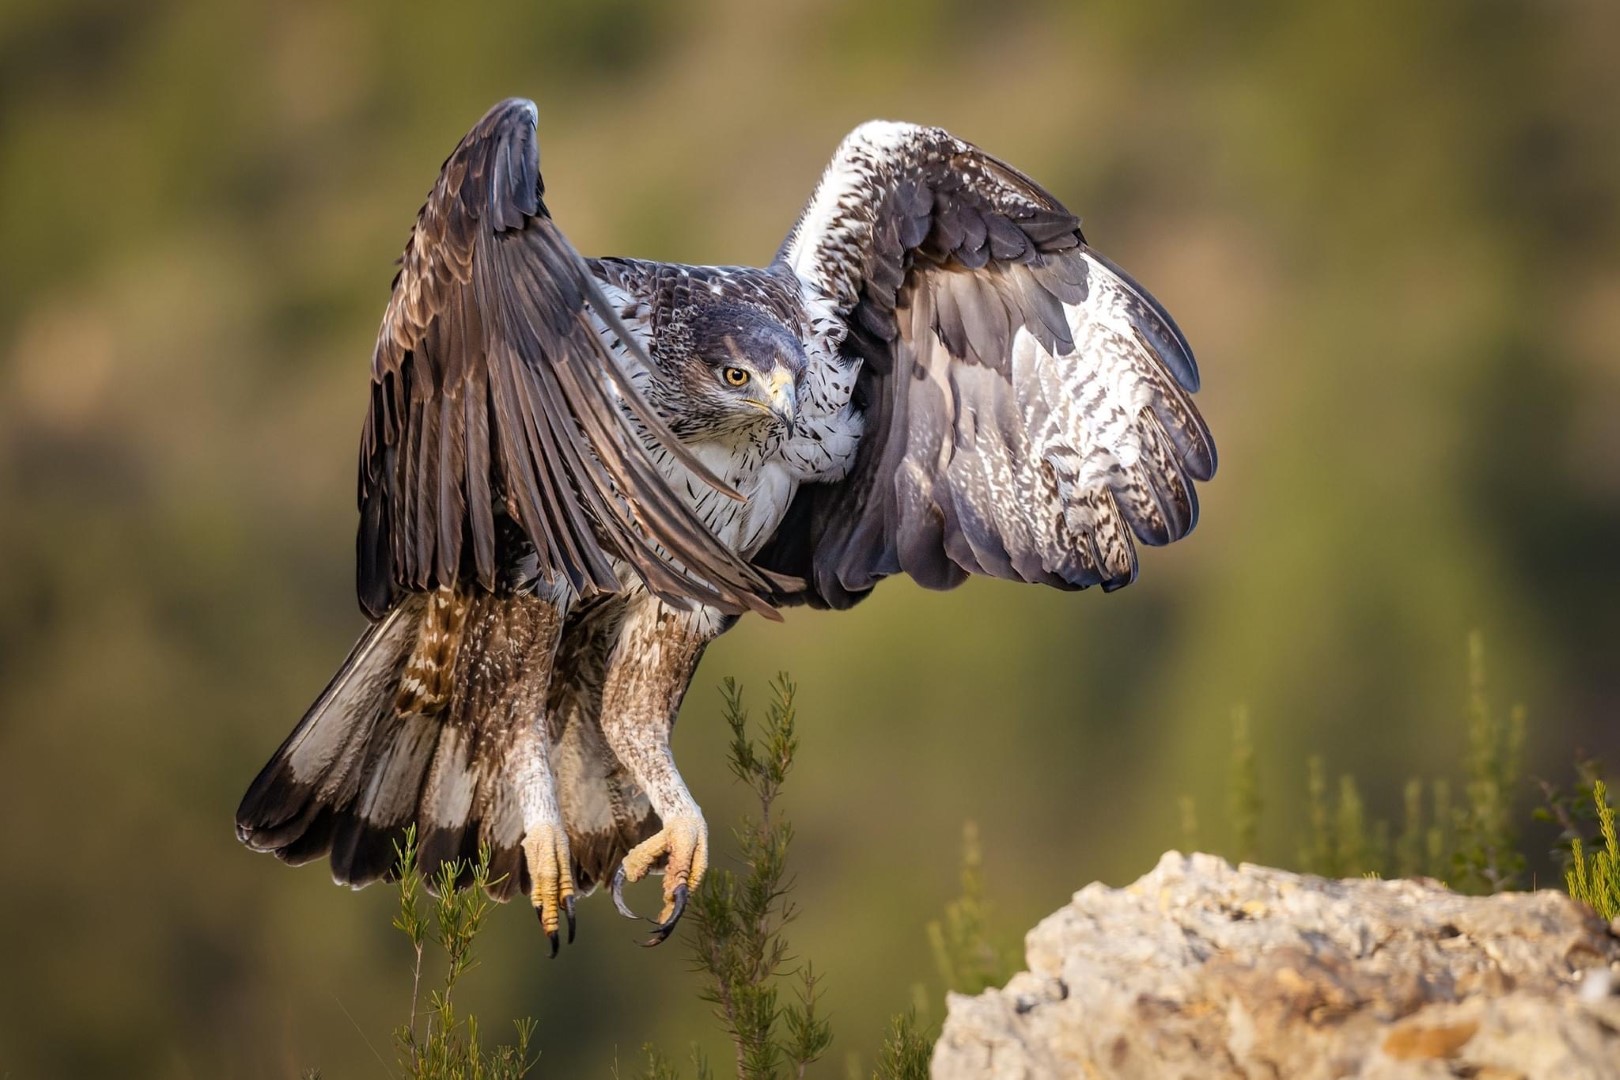 Shqiponja bishtvijëzuar, Foto: Jetmir Troshani